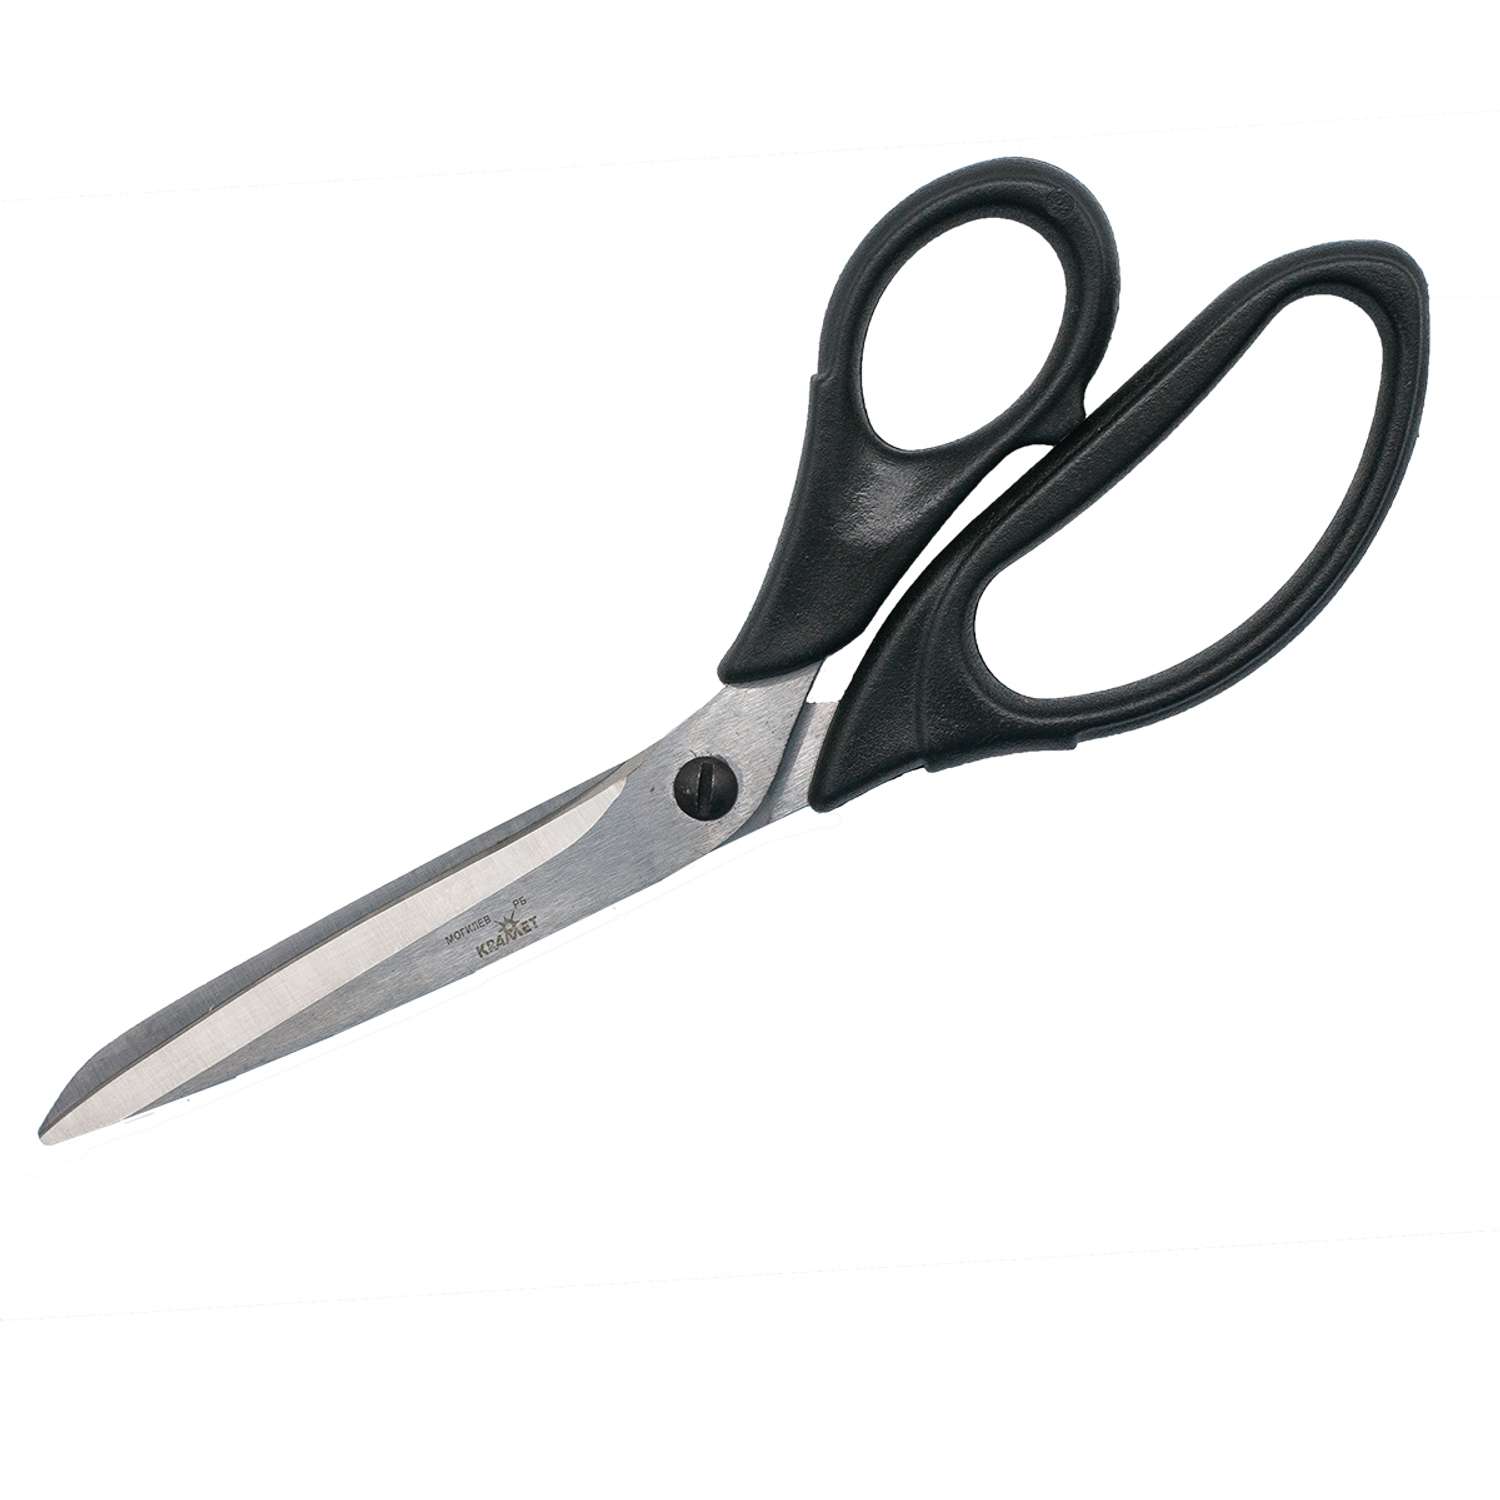 Ножницы портновские KARMET стальные пластиковые ручки винт для регулировки хода 23 см 484232 - фото 2